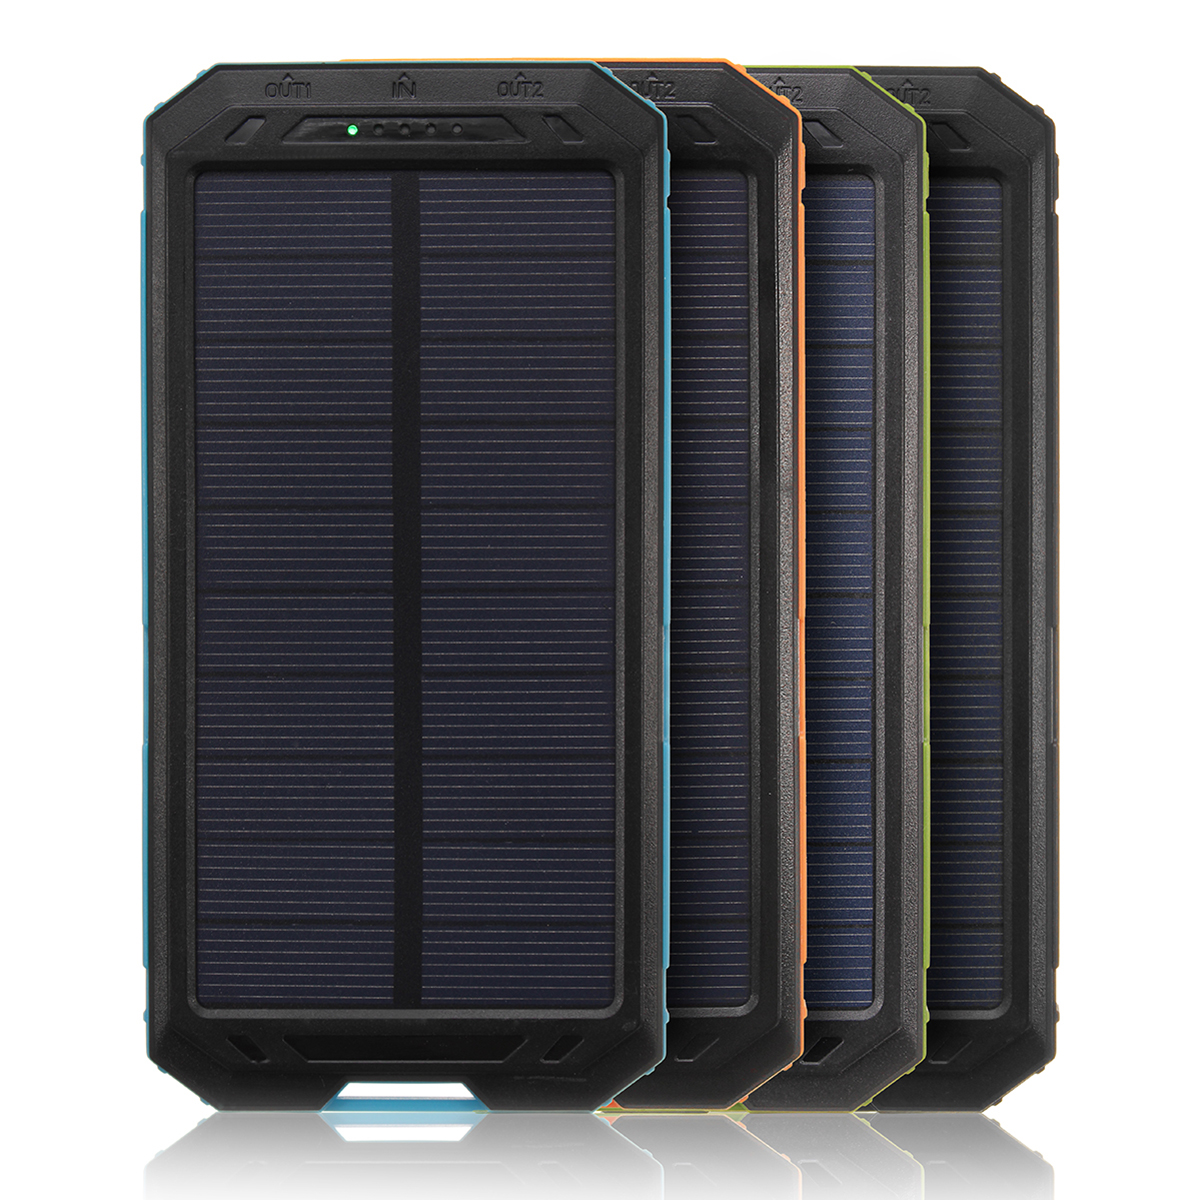 

30000mah Двойной USB Солнечная Батарея Зарядное устройство Universal Водонепроницаемы Солнечная Зарядка панели с помощью LED